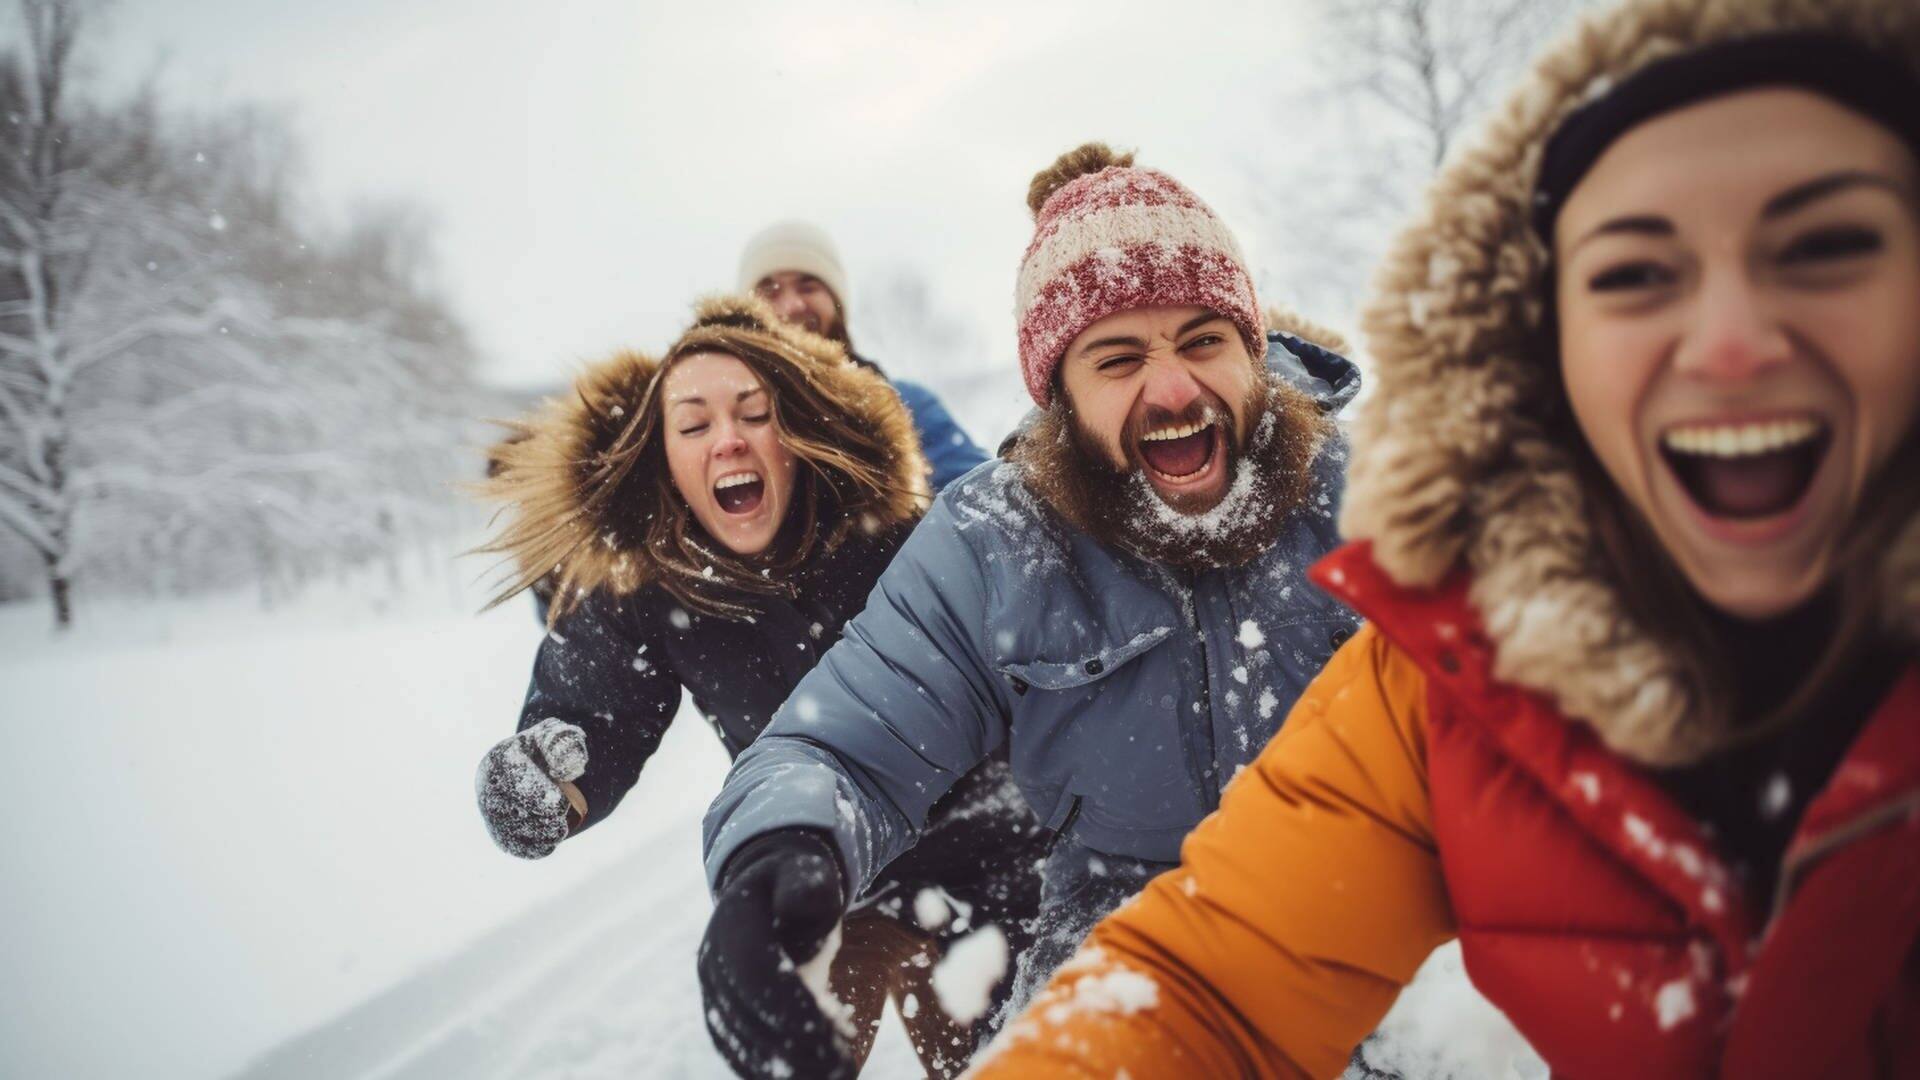 Drei junge Leute rennen im Winter lachend durch den Schnee – ein Mythos, der stimmt: dass Lachen den Körper aufwärmt. (Foto: Adobe Stock, Катерина Євтехова)